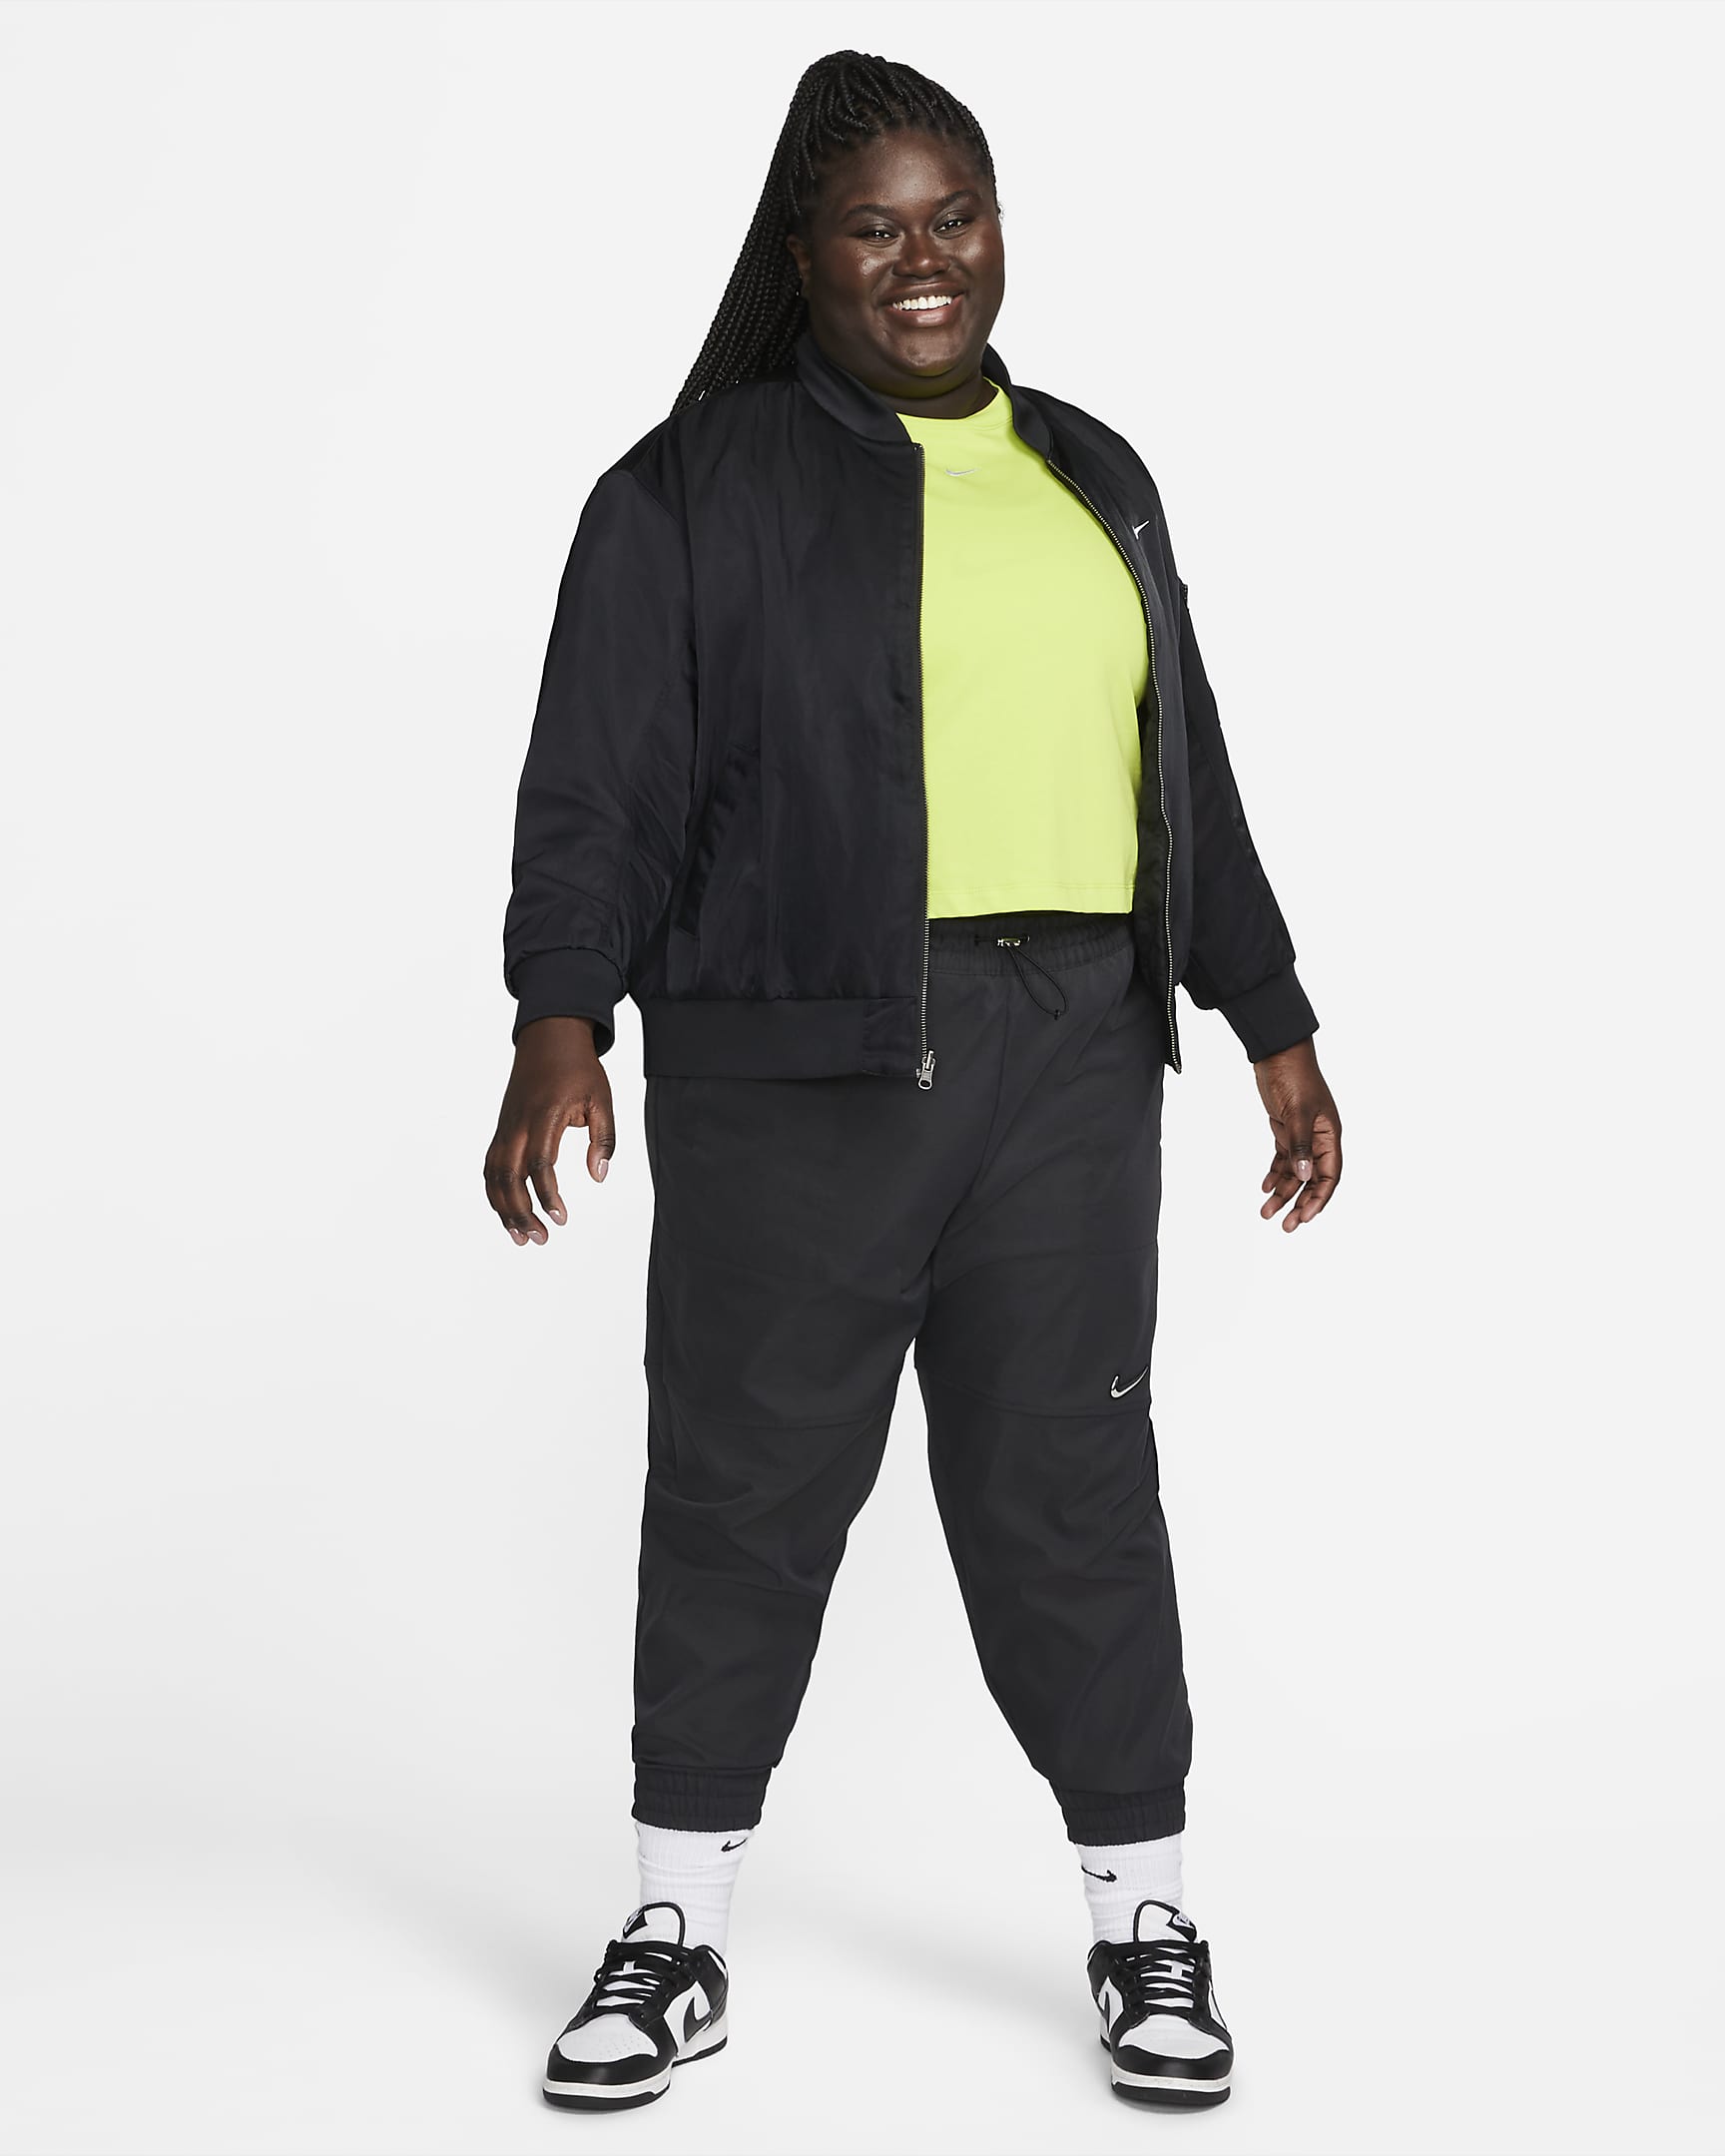 Nike Sportswear Women's Reversible Varsity Bomber Jacket (Plus Size ...